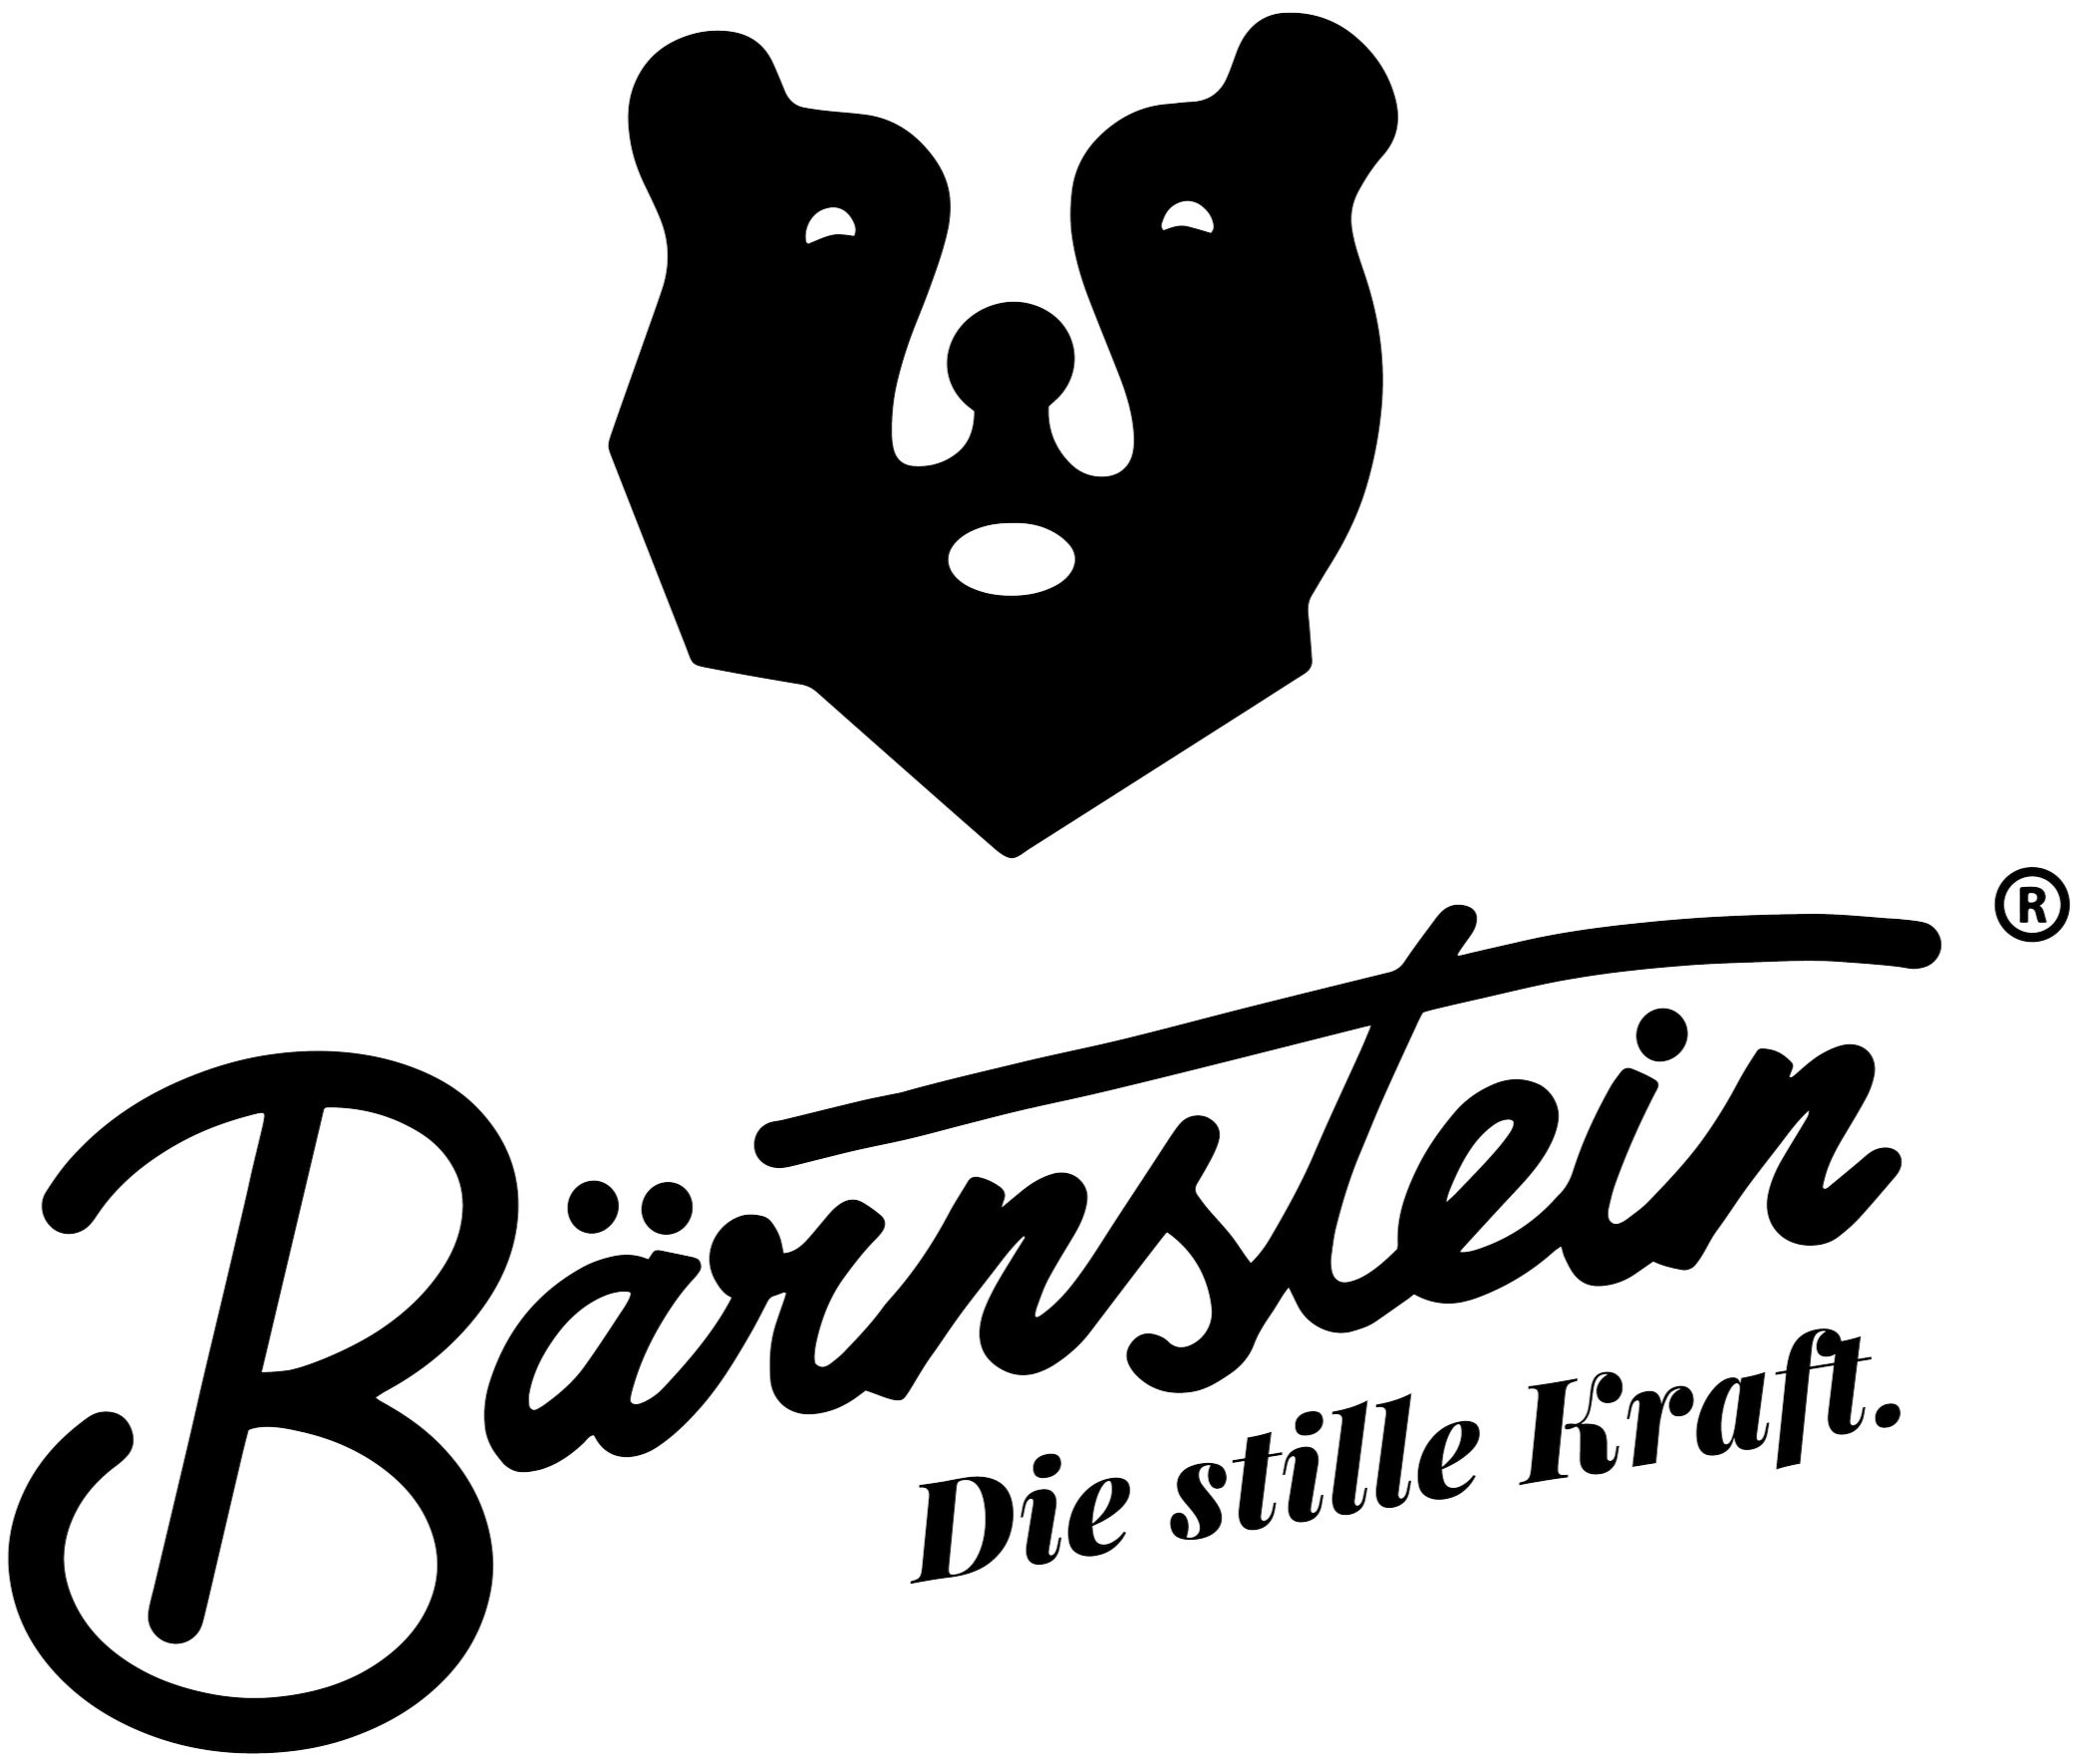 Bärnstein